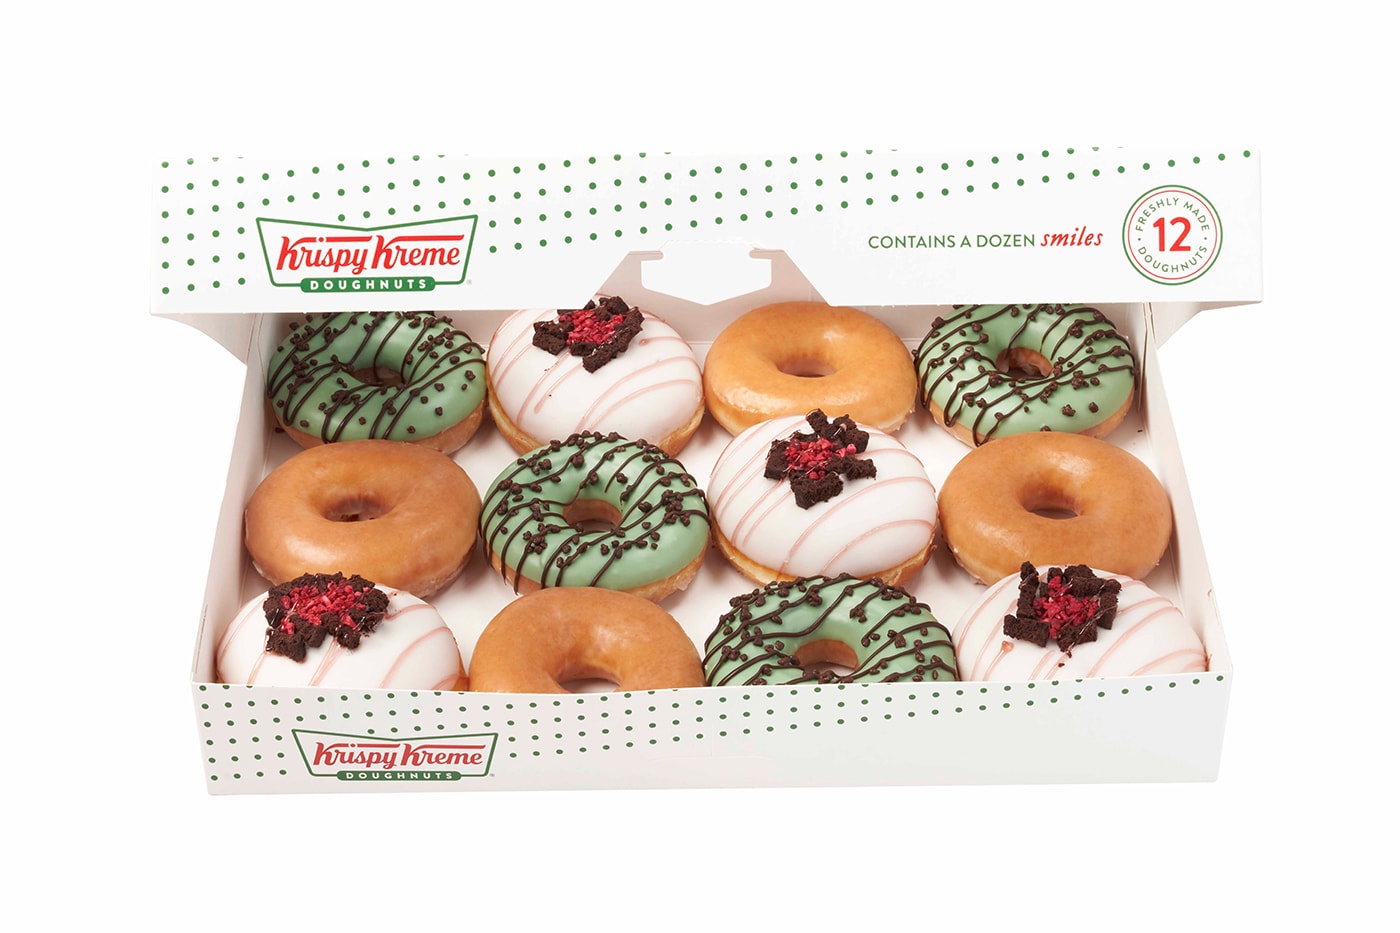 Krispy Kreme Summer Chill Doughnuts milkshakes release Info ice cream flavors